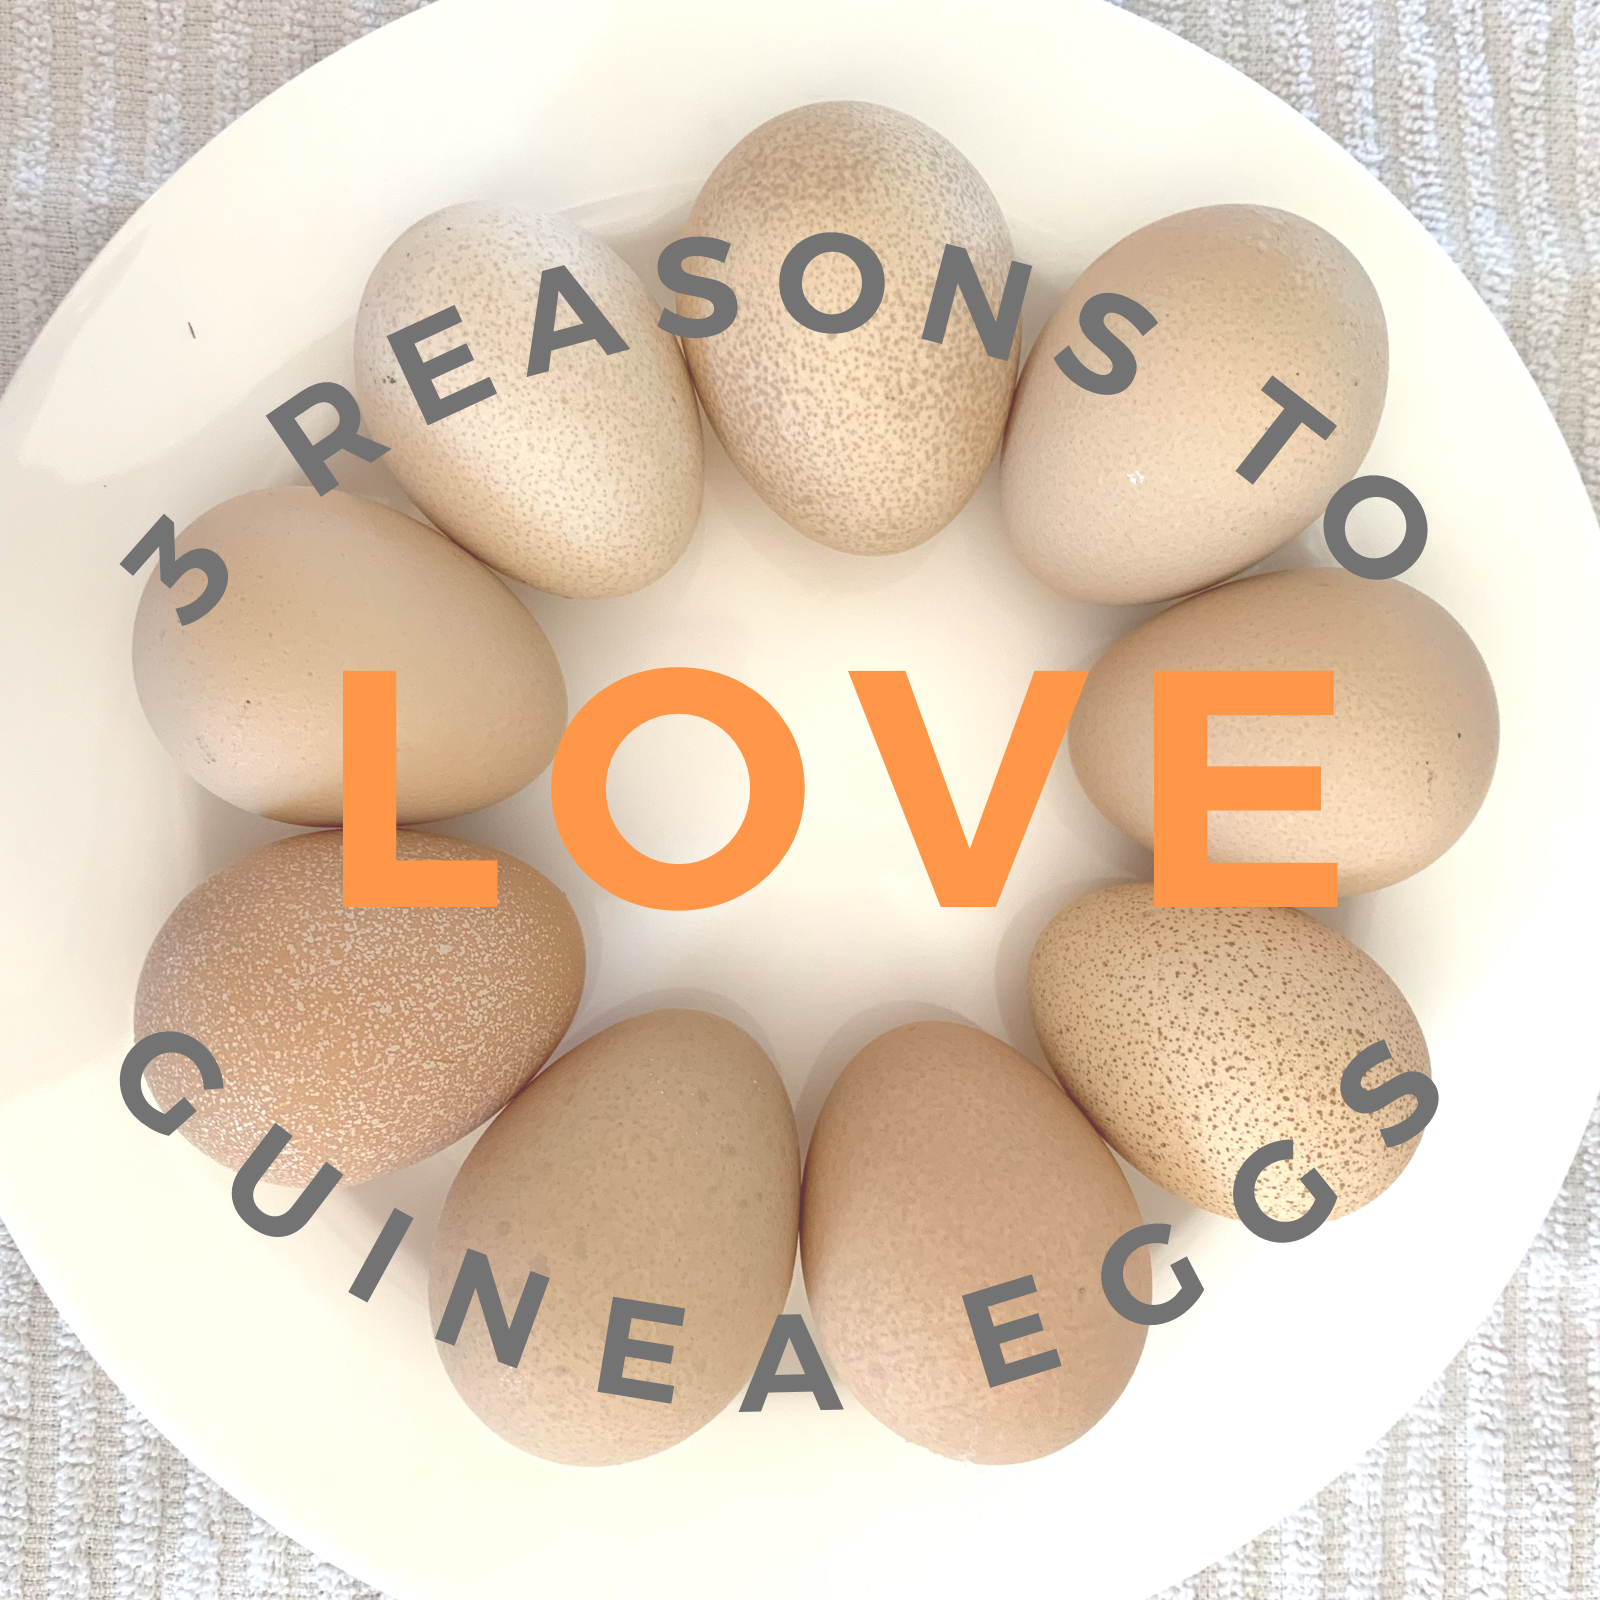 Three reasons to love Guinea fowl eggs